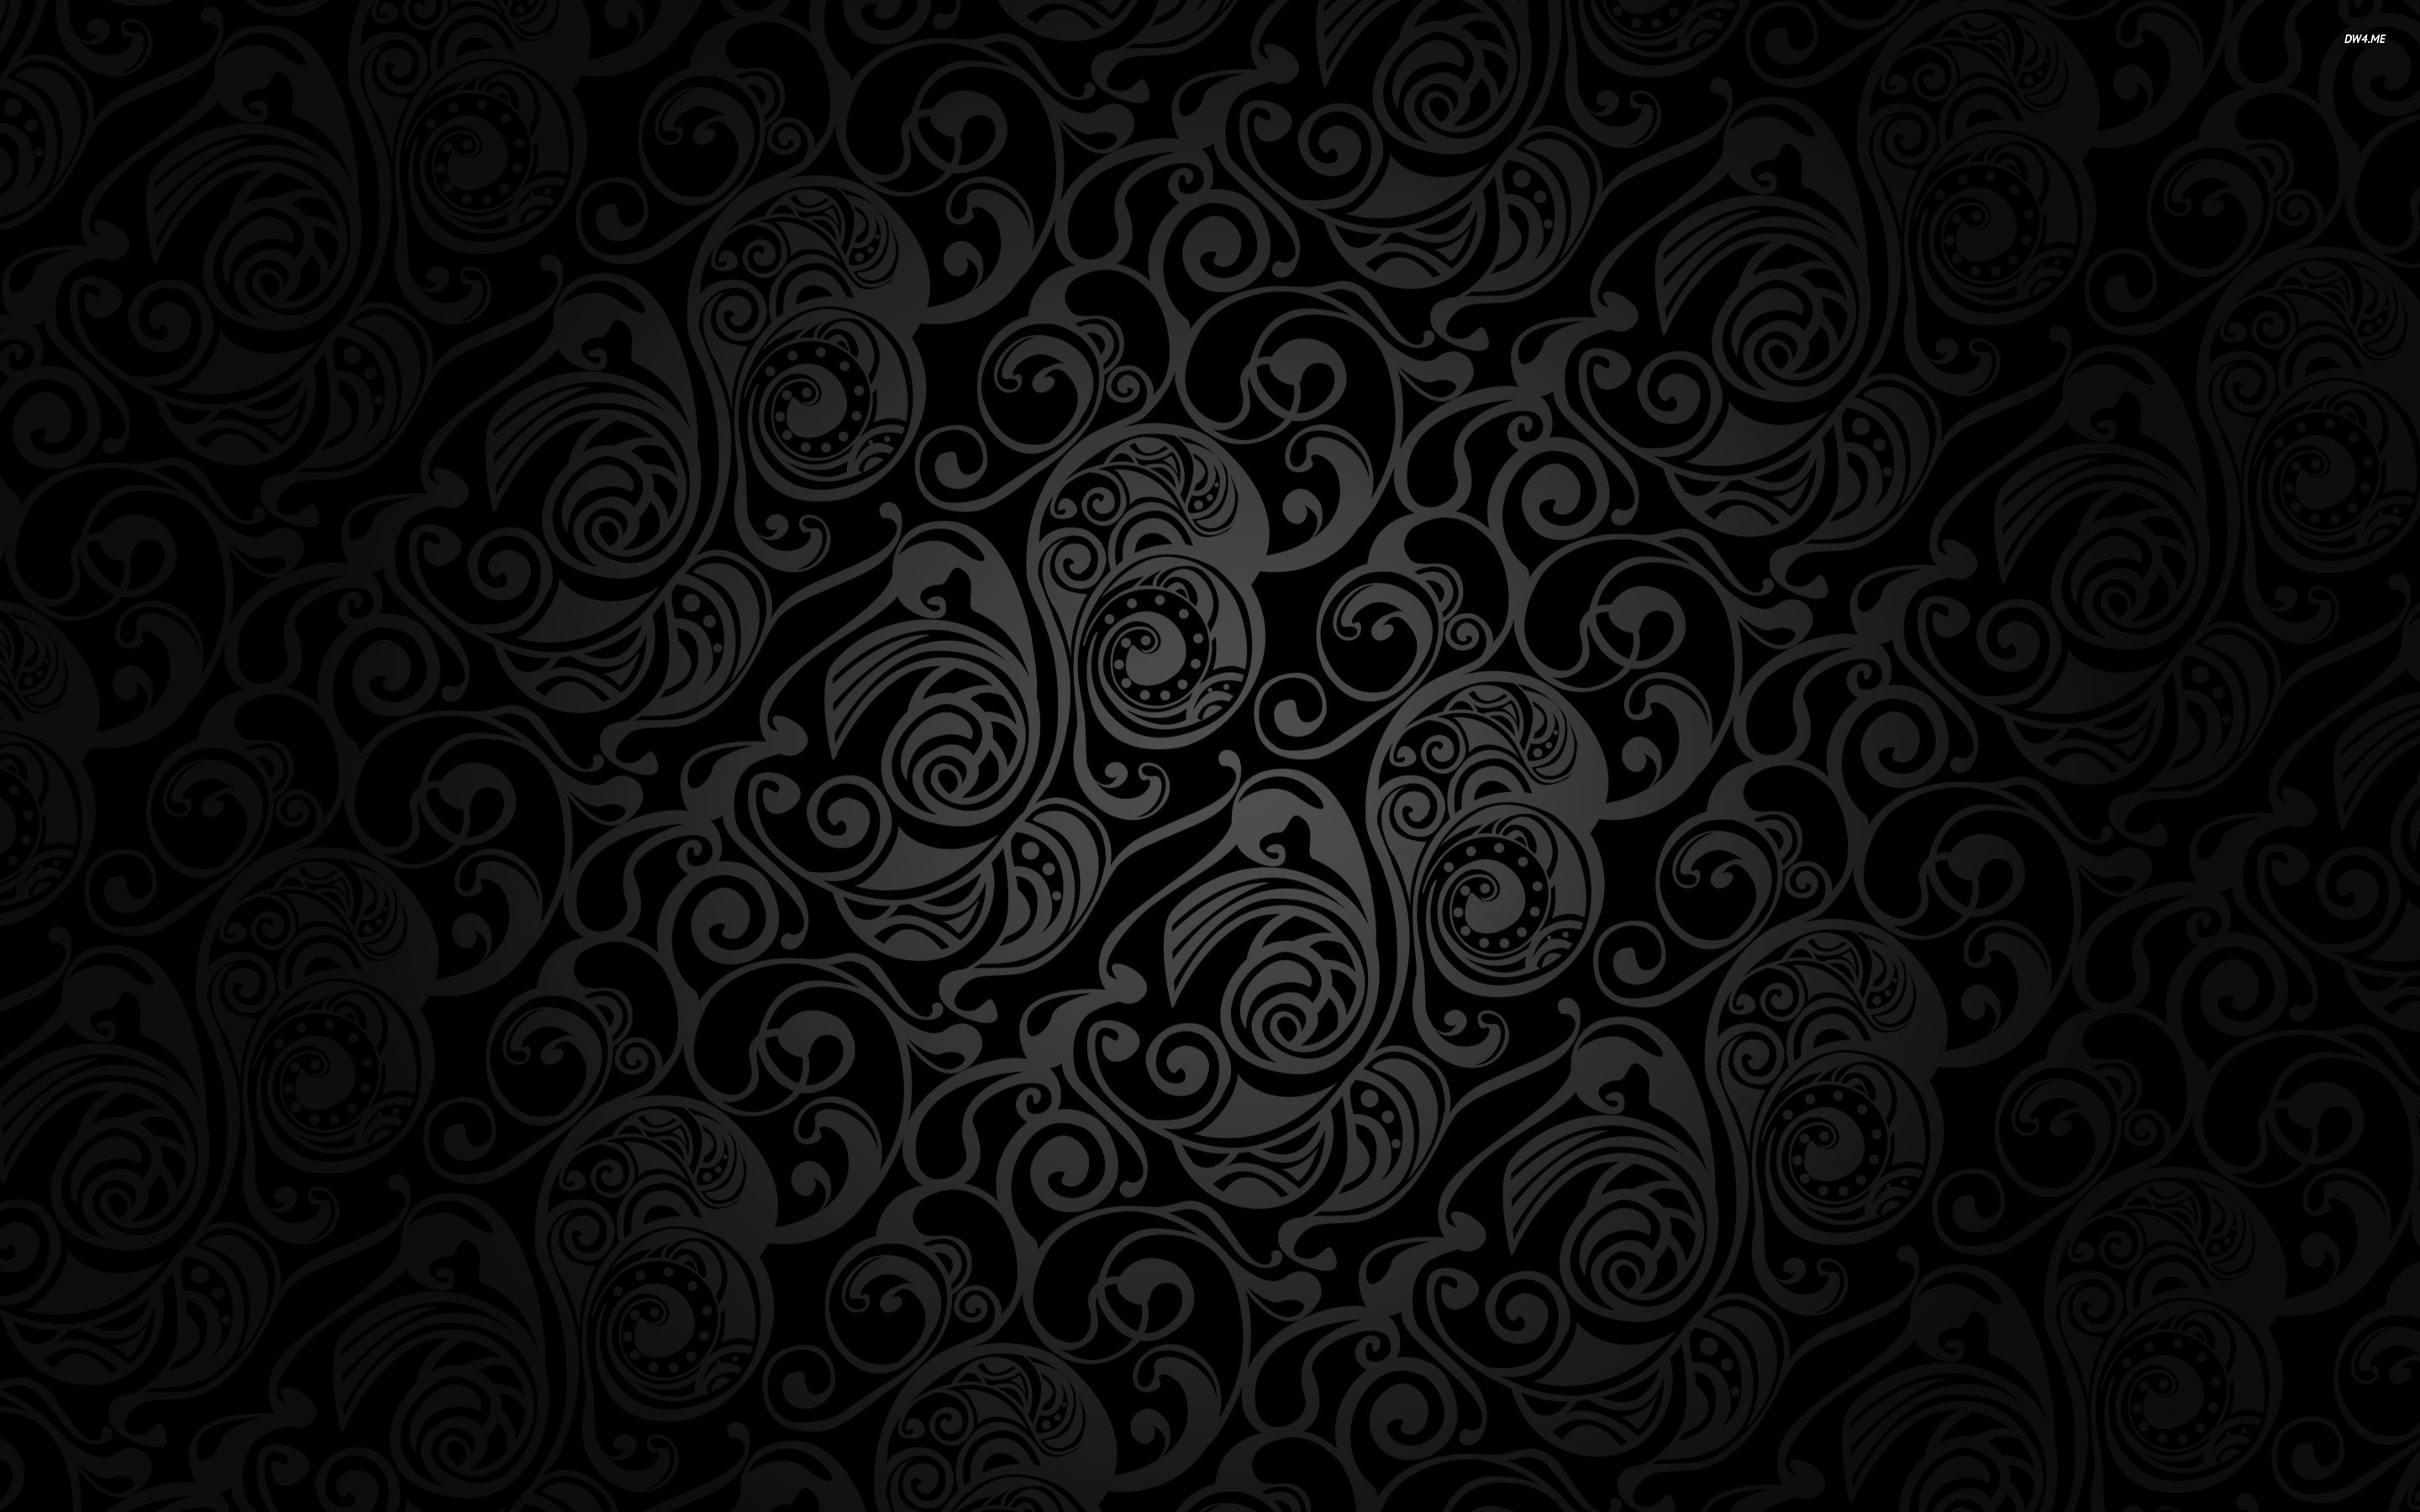 tapete batik hitam,muster,schwarz,design,bildende kunst,hintergrund